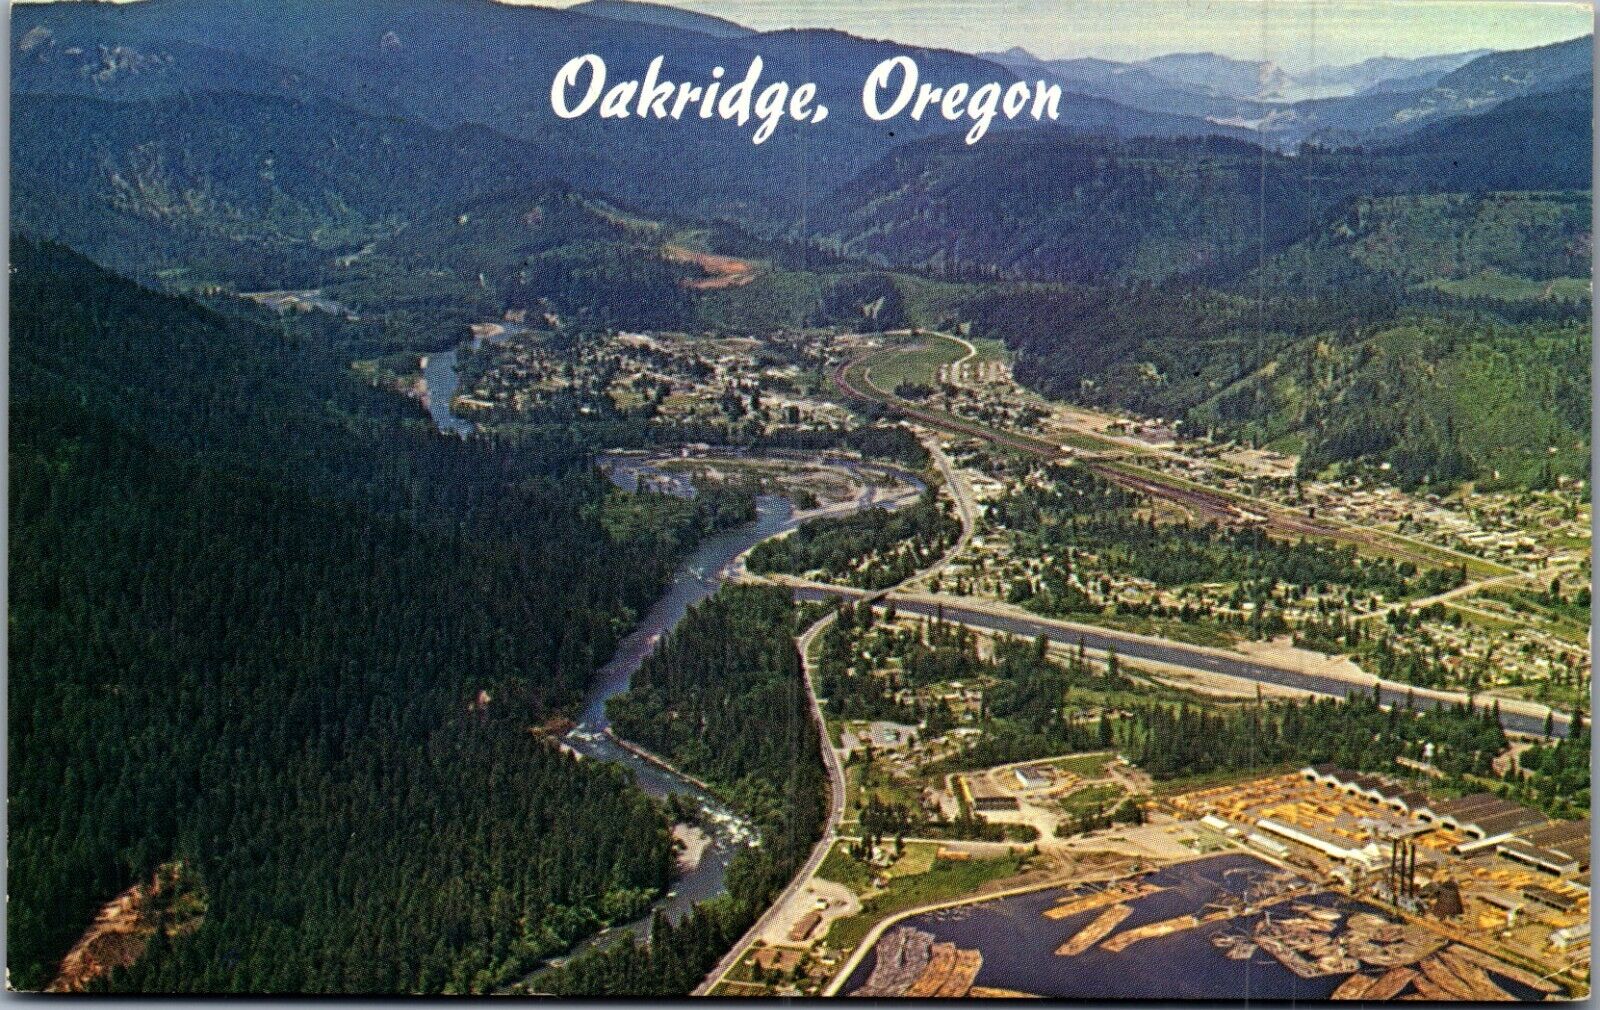 Oakridge, Oregon Postcard (1964)